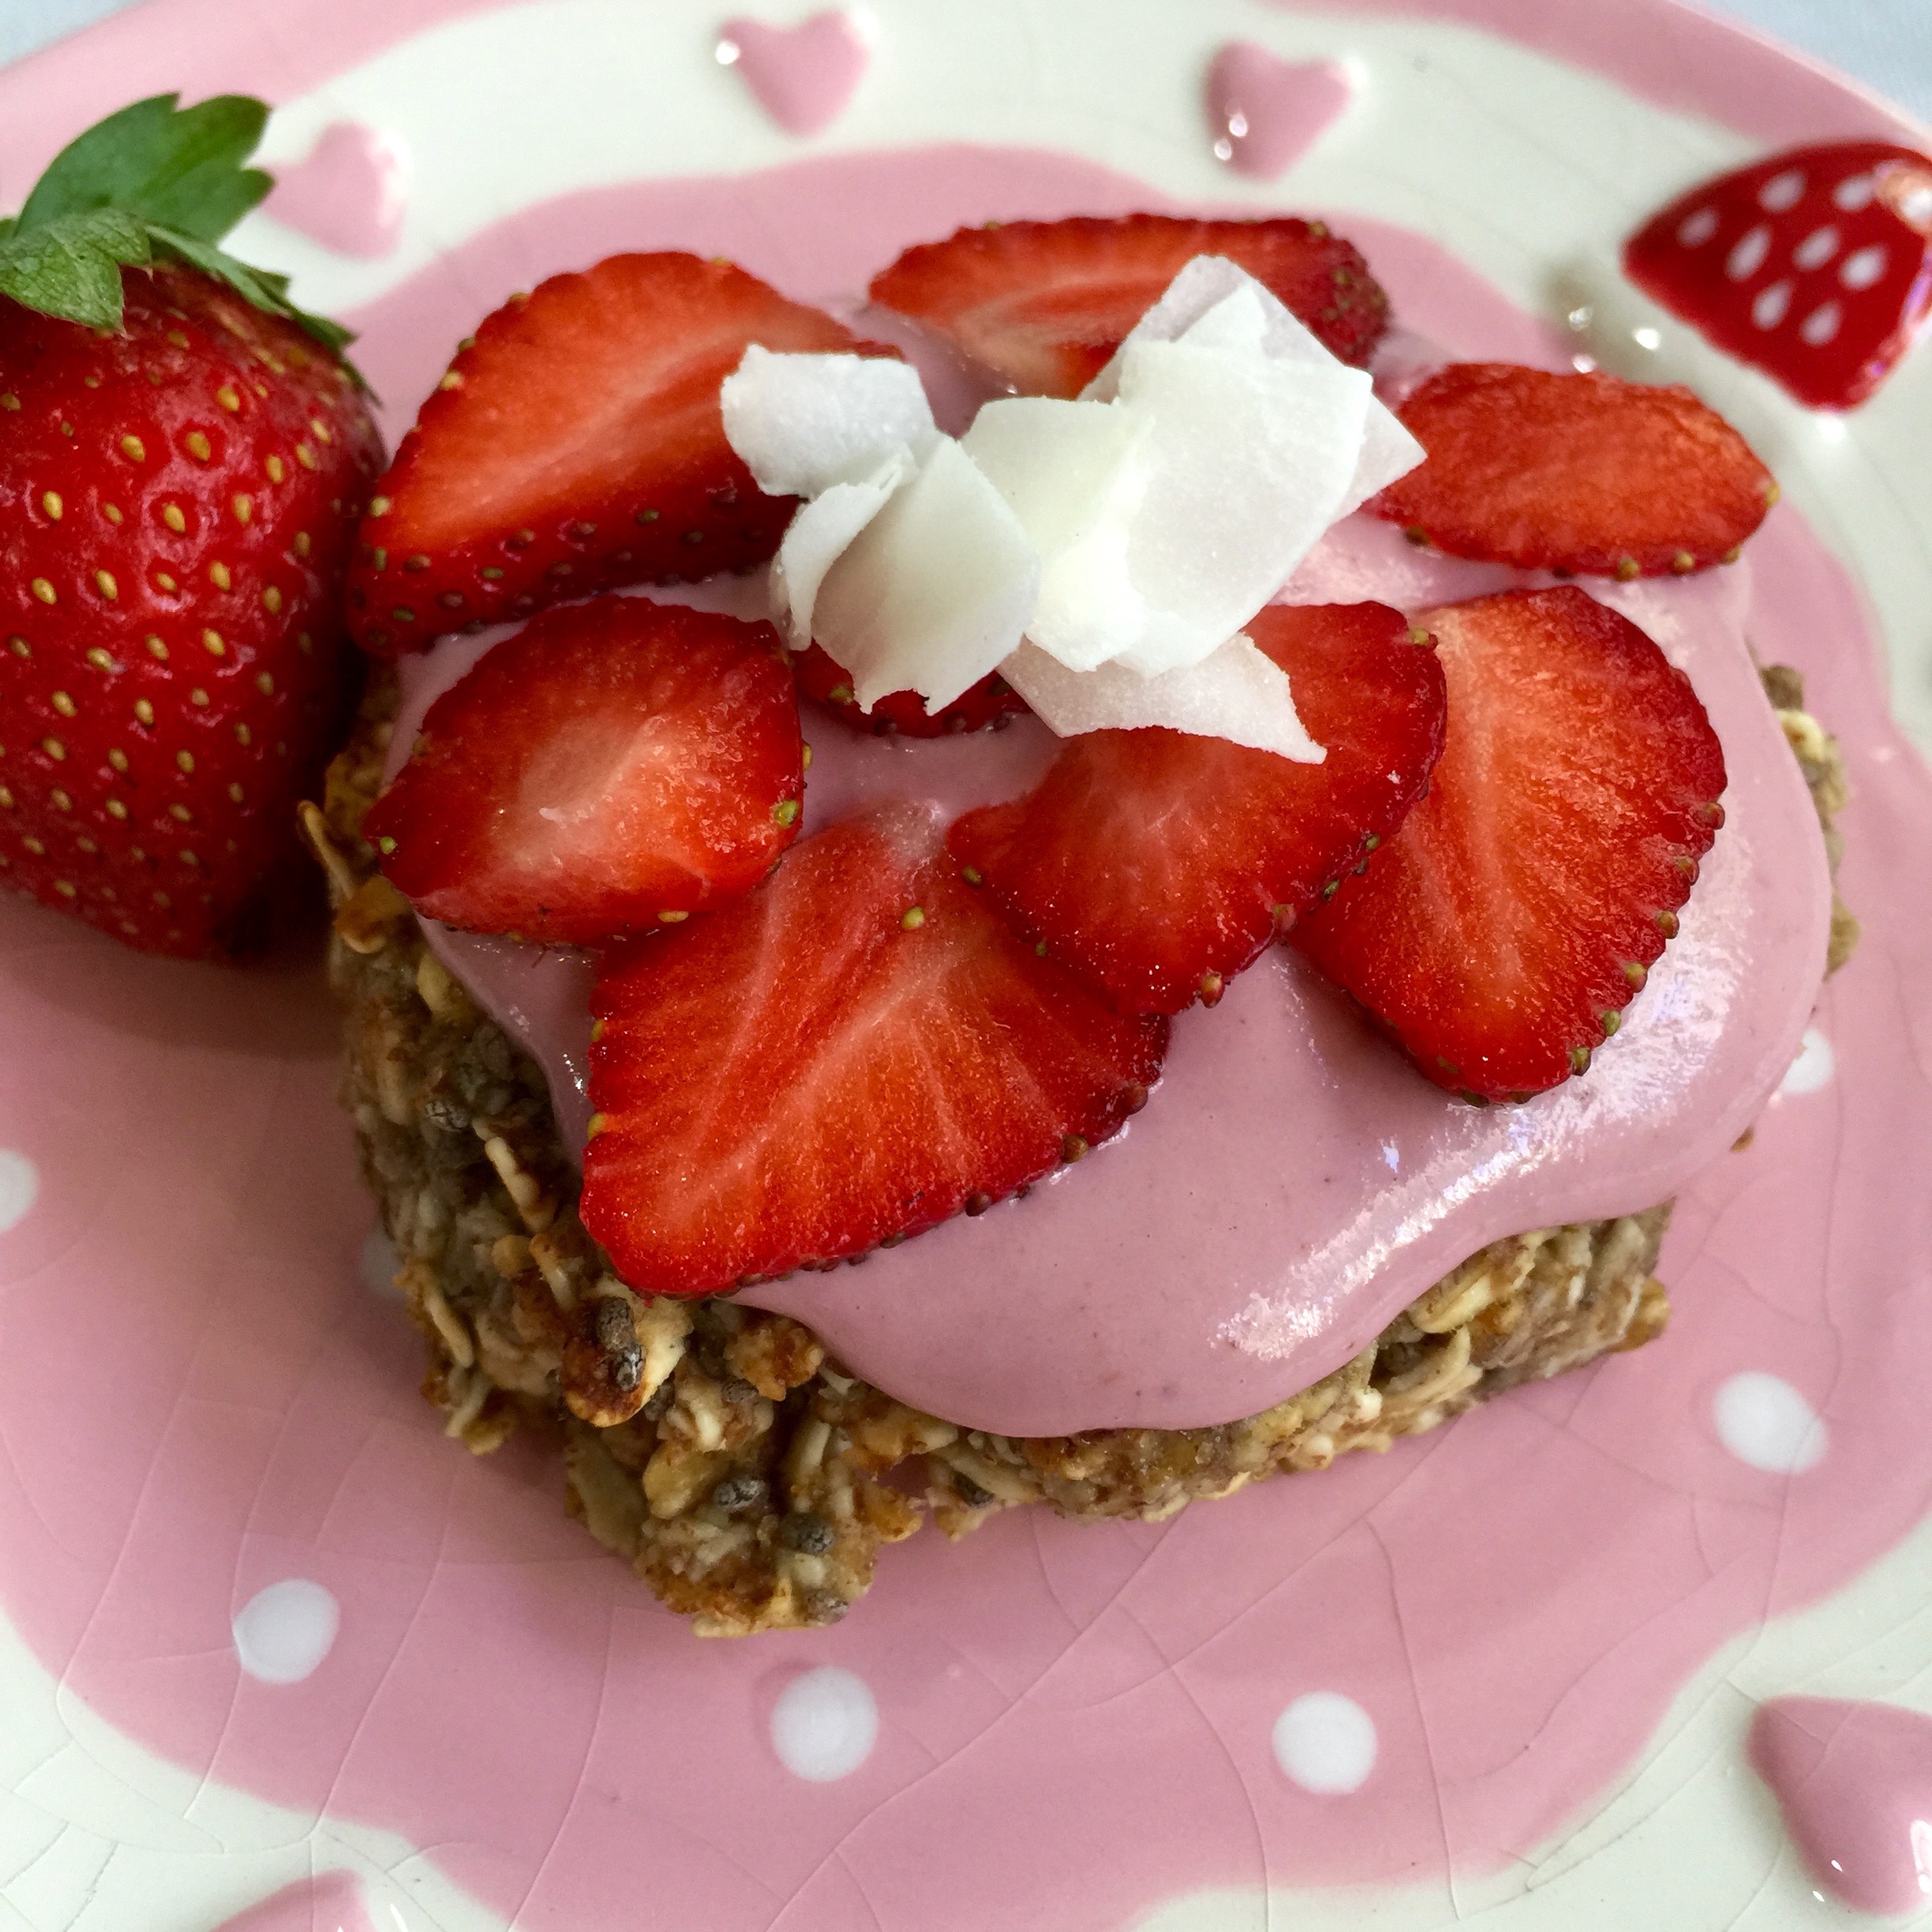 Banana oat cookie with strawberry cashew cream & fresh strawberries